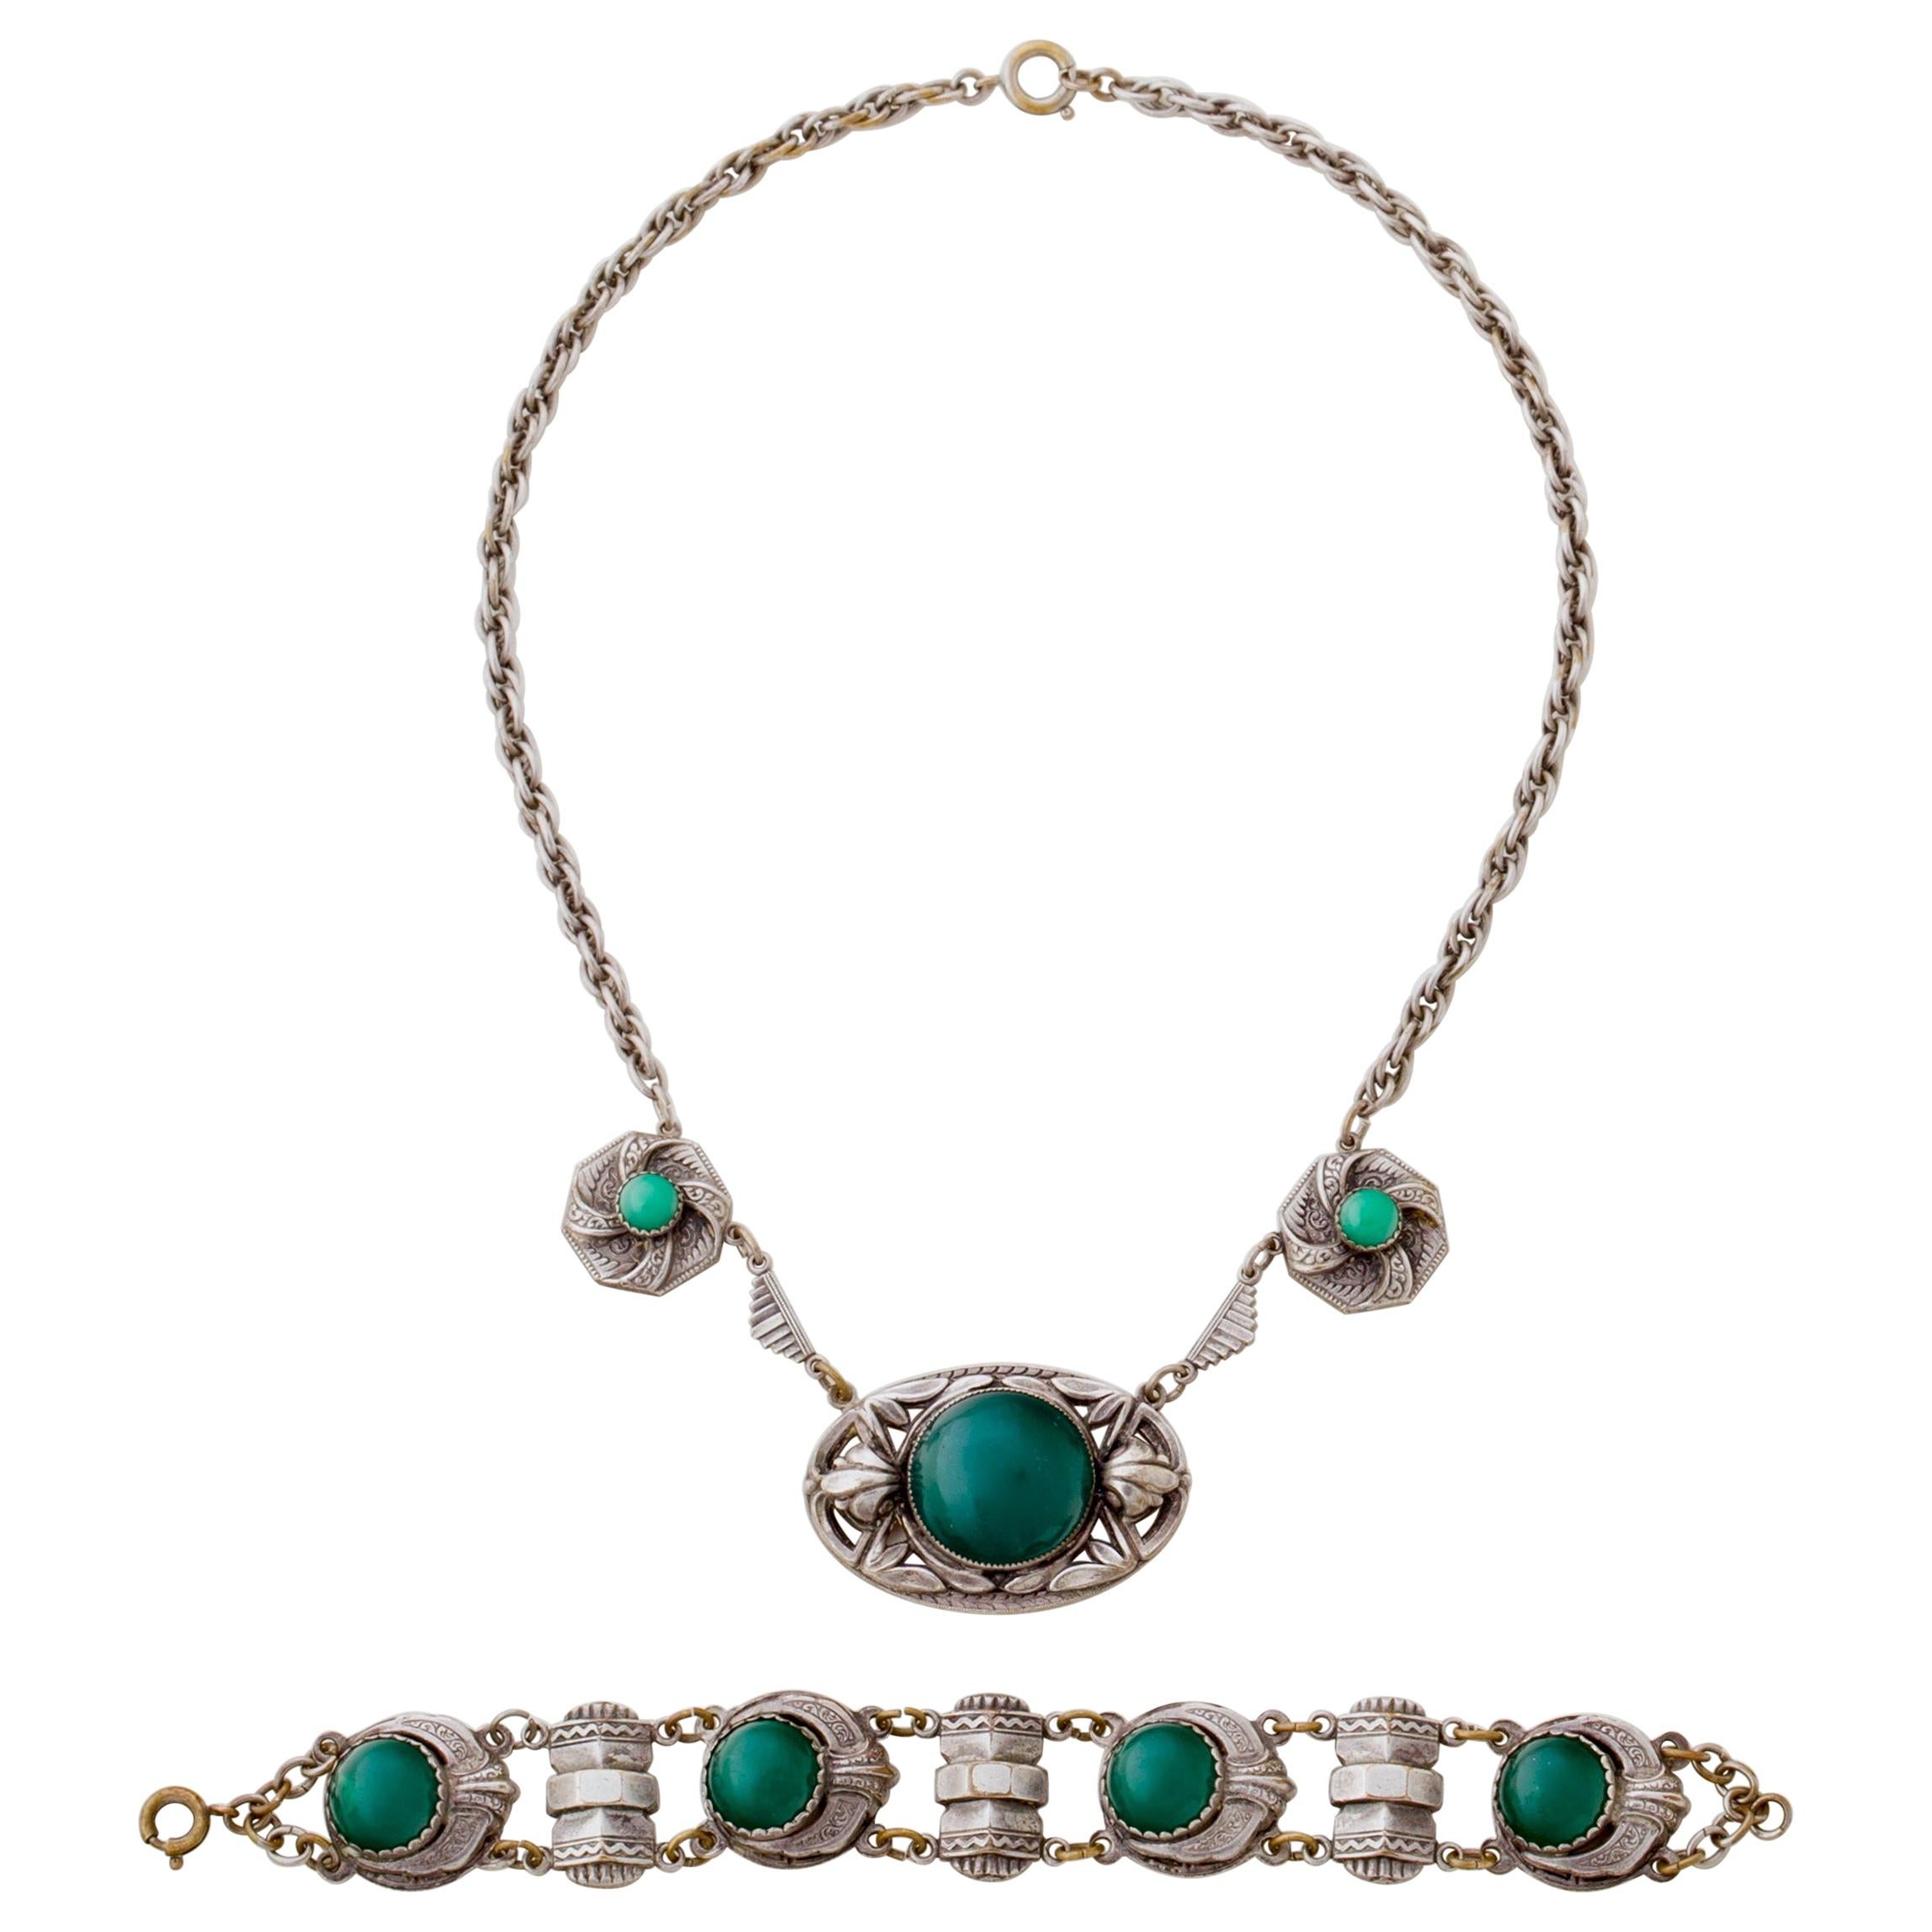 Halskette und Armband im Jugendstil aus Silber und grünem Cabochon